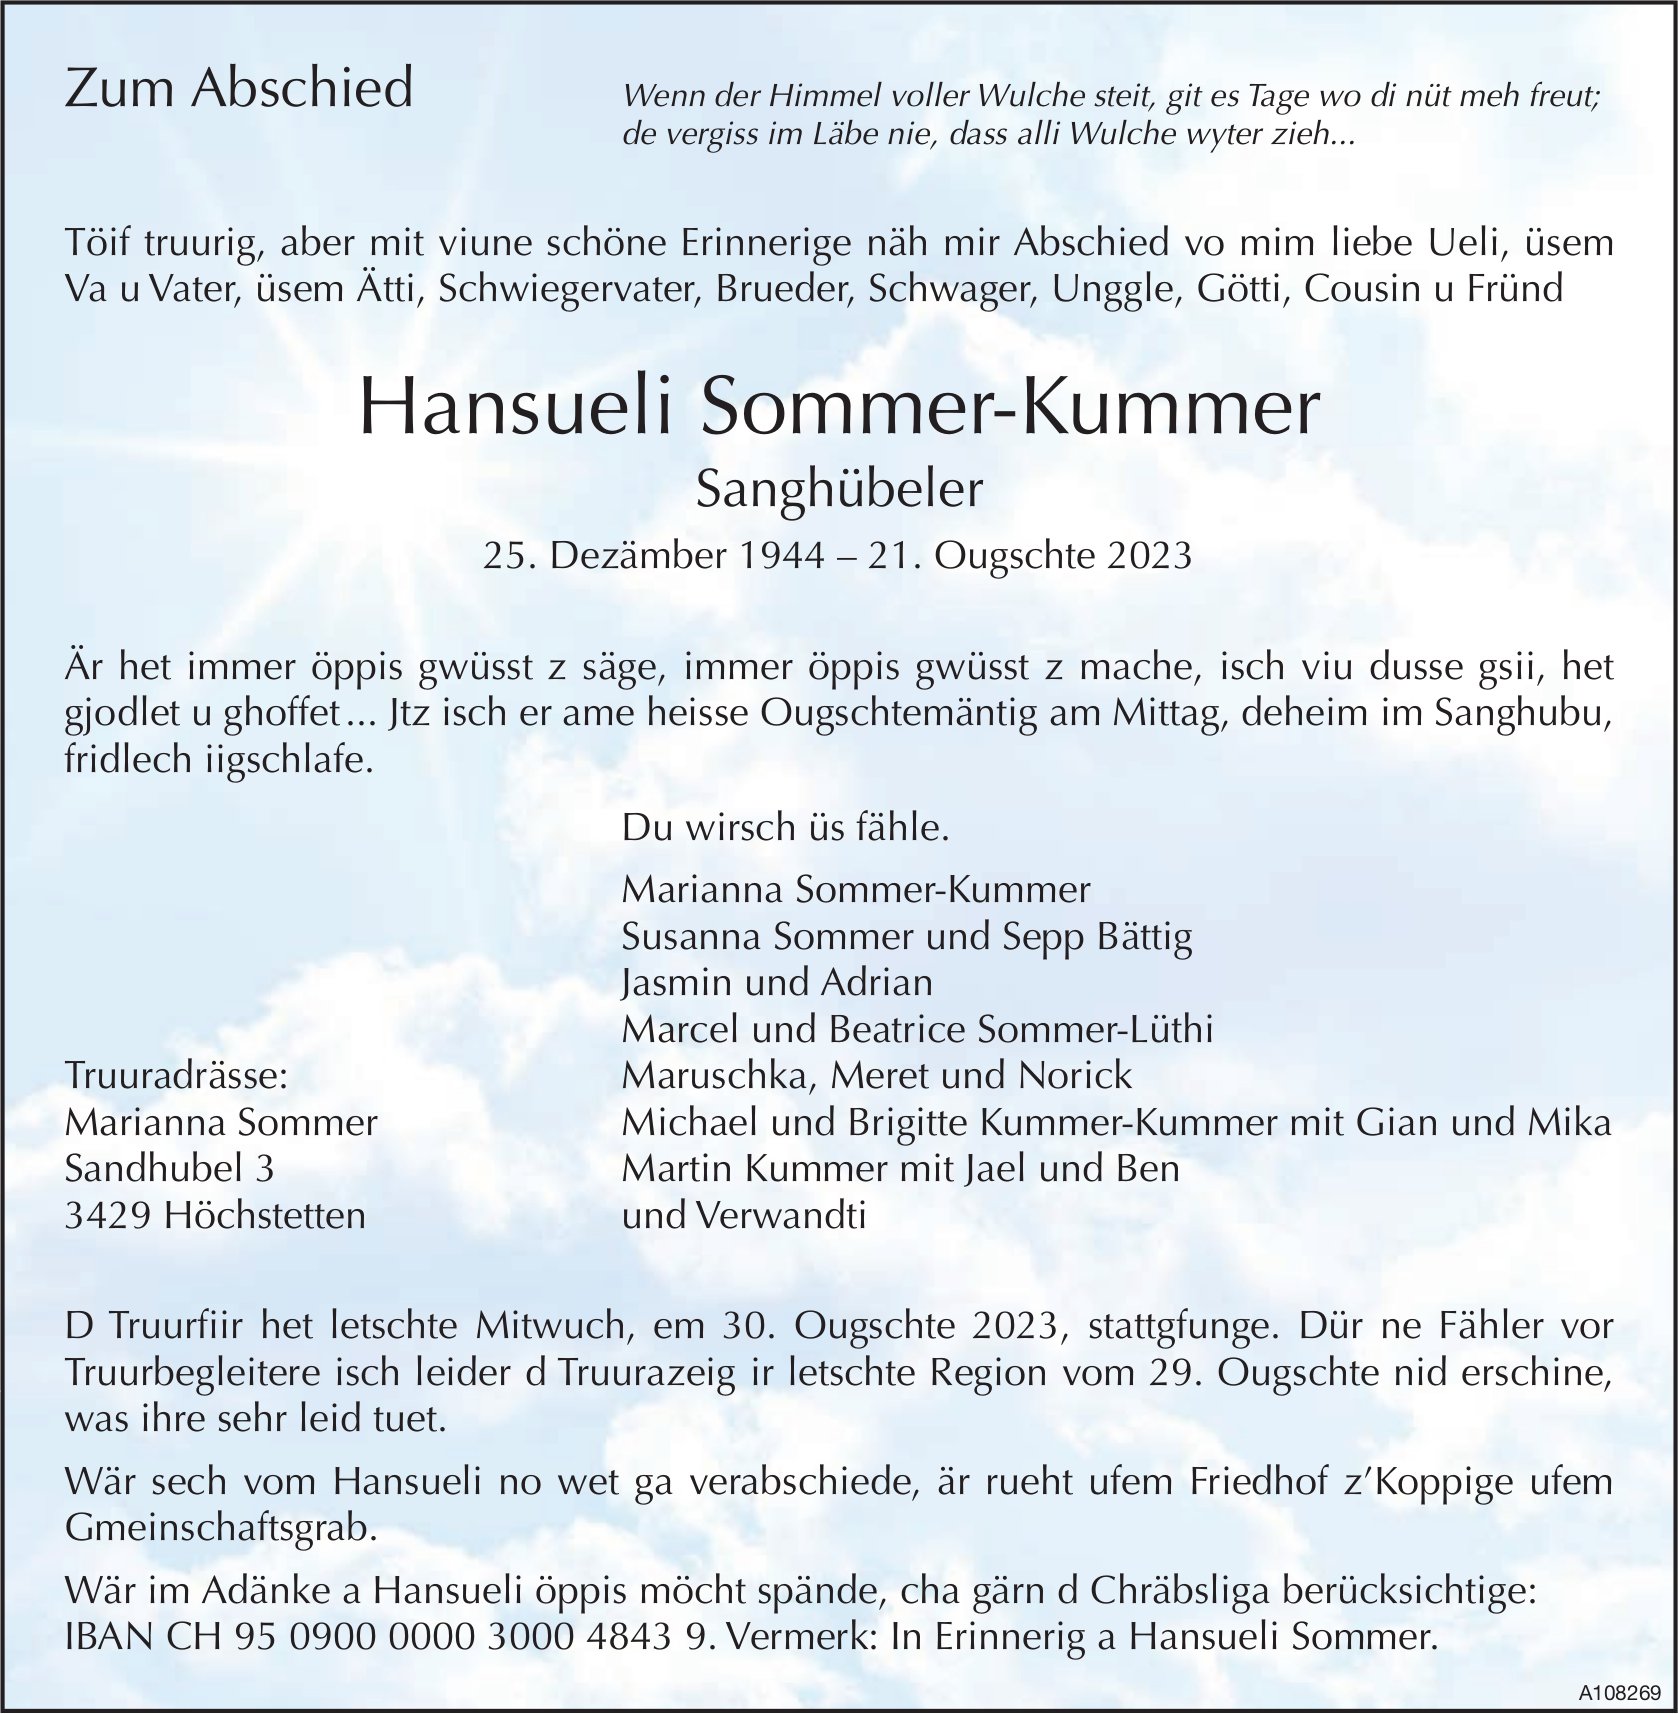 Hansueli Sommer-Kummer, August 2023 / TA